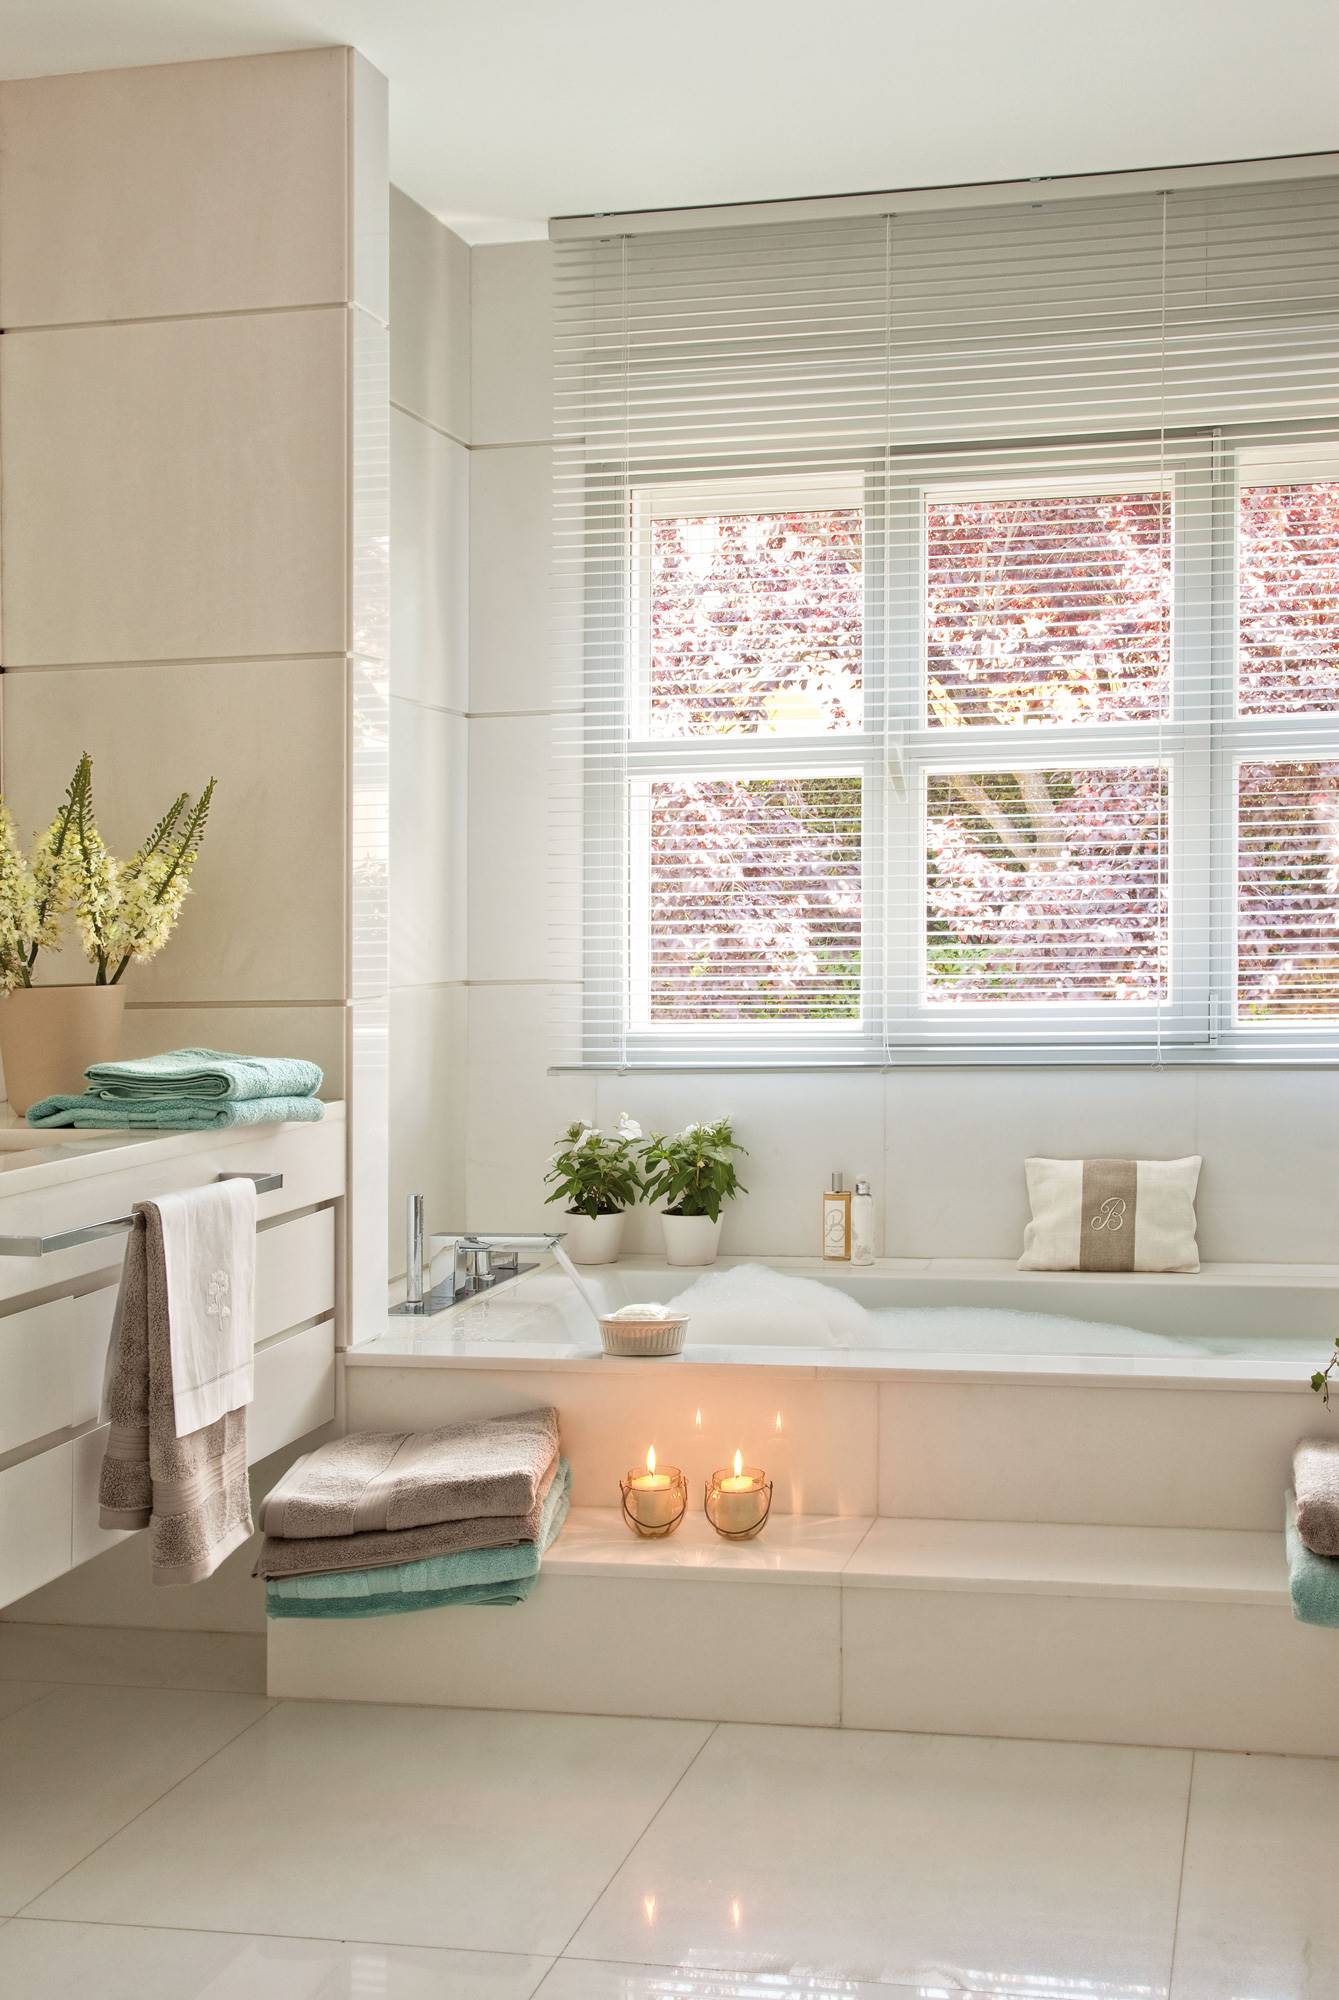 Baño de estilo clásico con bañera de hidromasaje y pavimentos de mármol. 